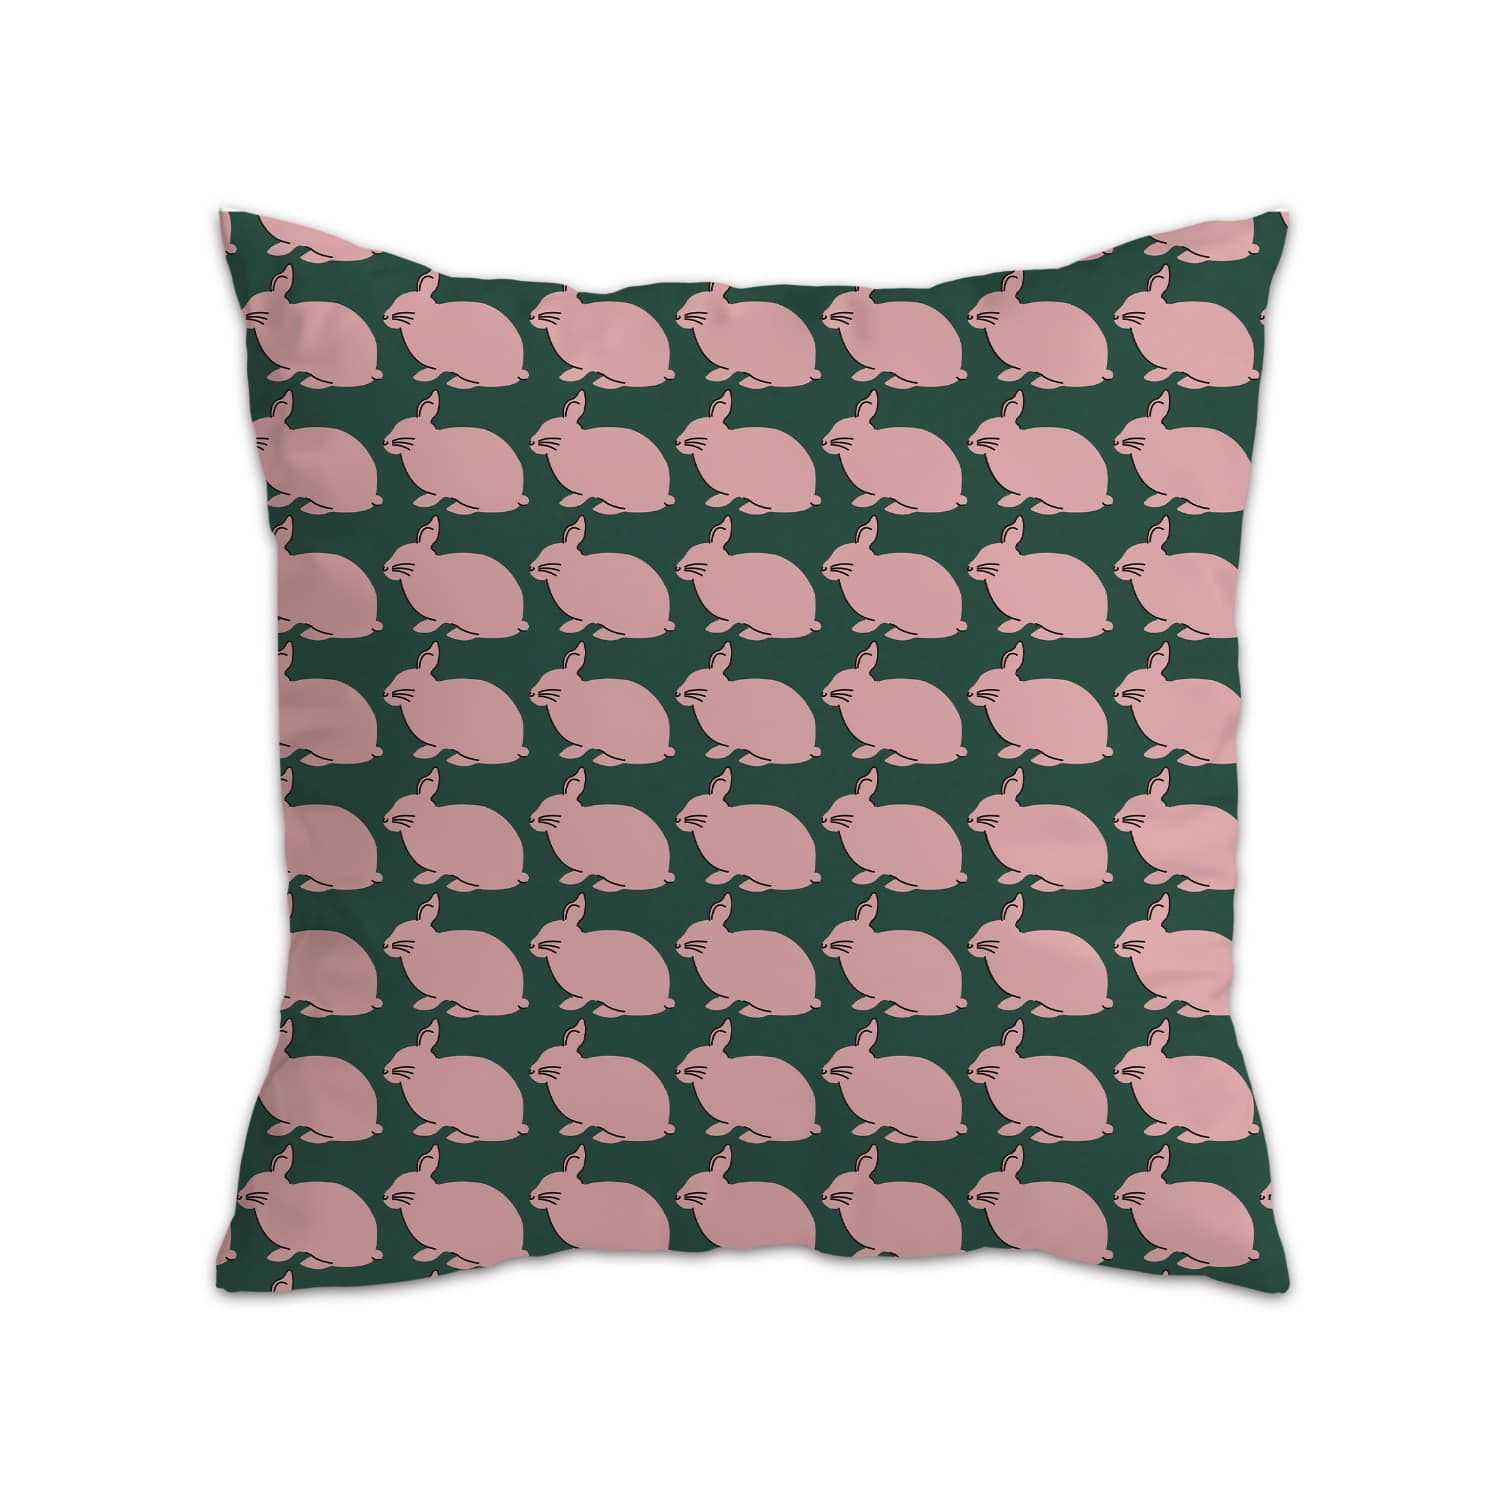 [a.o.b] Rabbit cushion